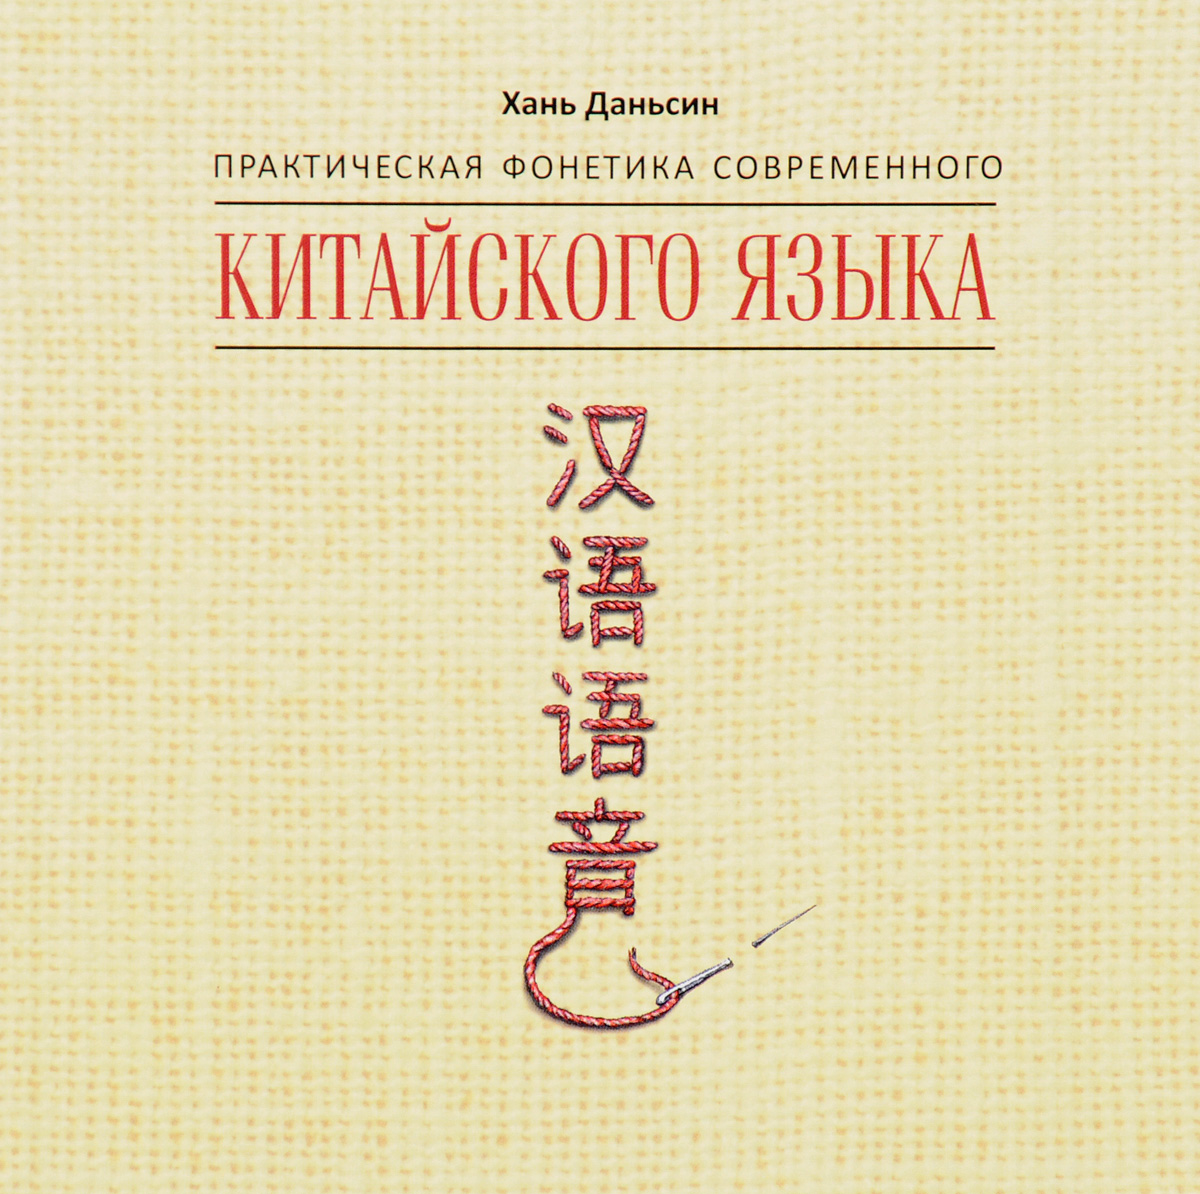 Практическая фонетика современного китайского языка (аудиокнига МР3 на CD) 